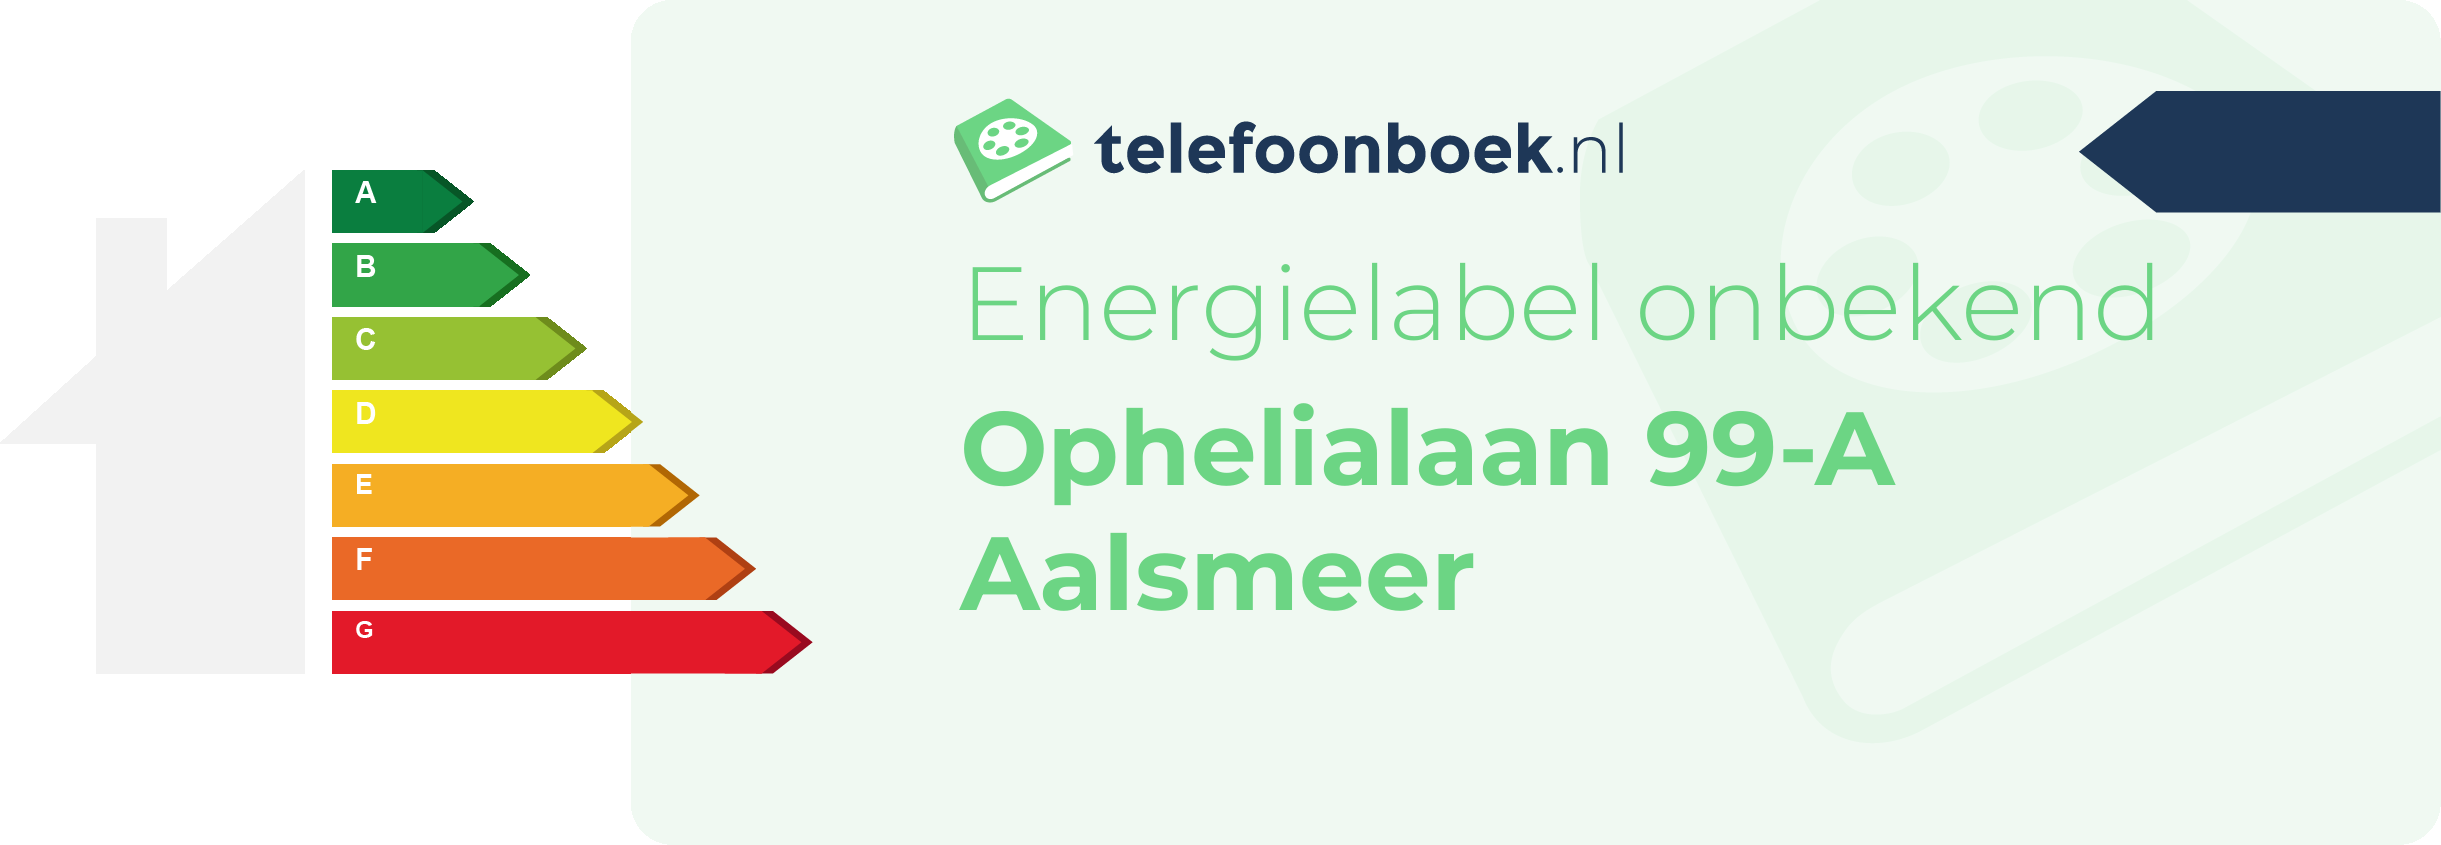 Energielabel Ophelialaan 99-A Aalsmeer